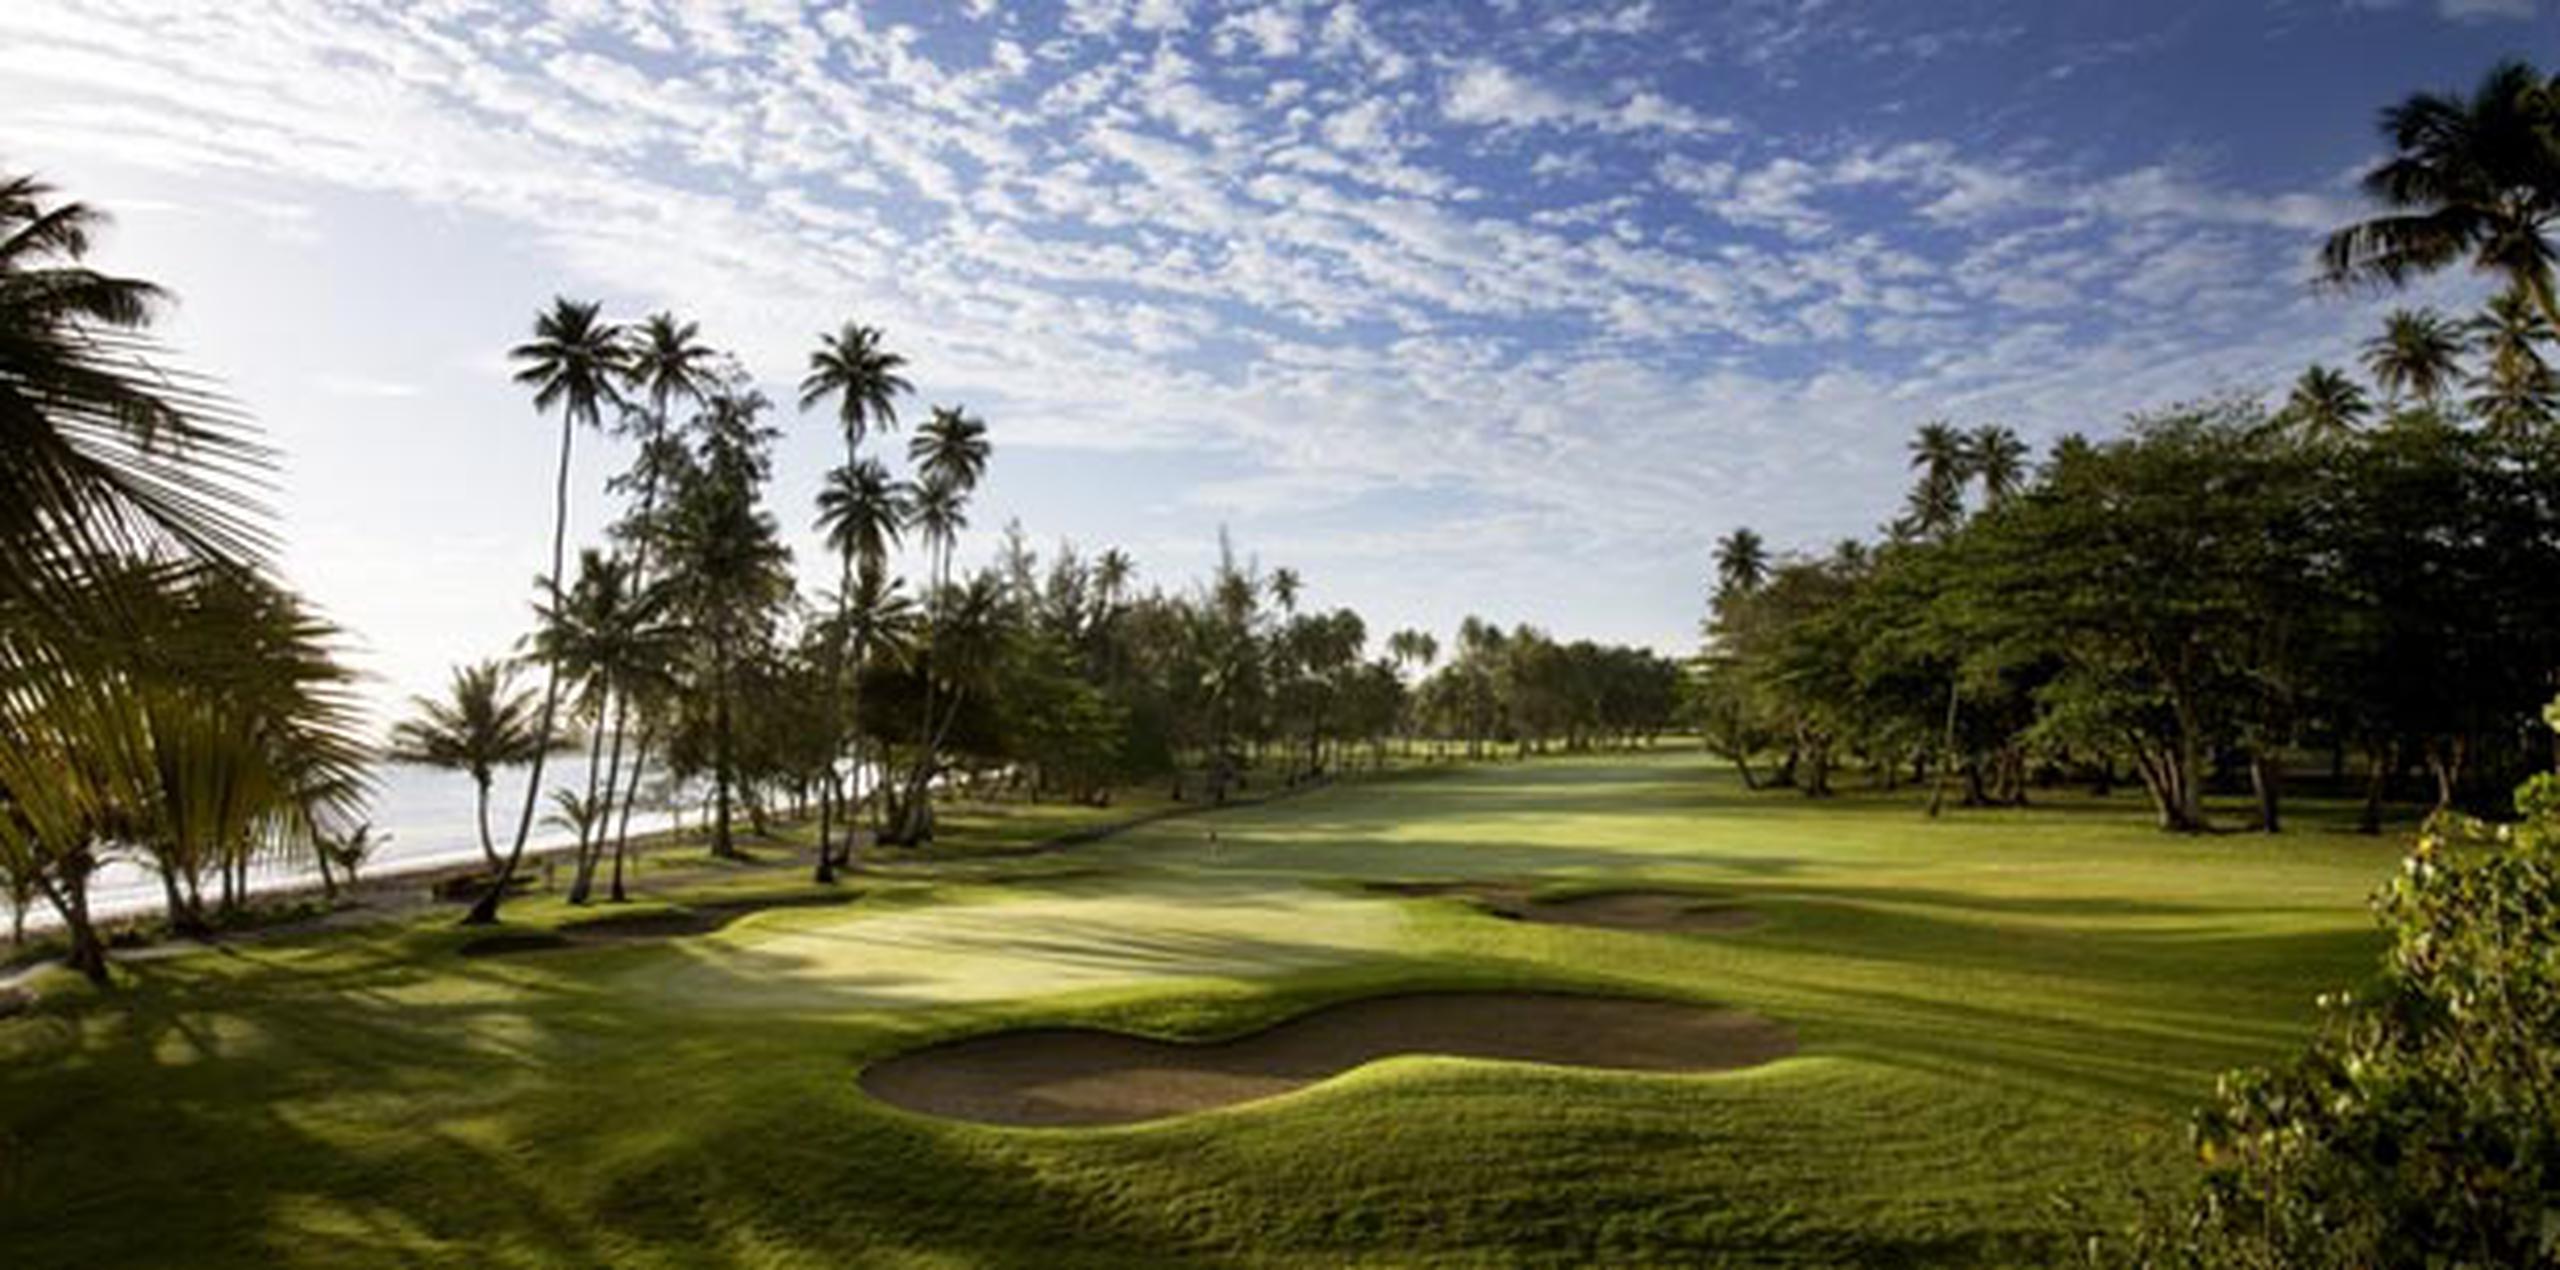 El campo de golf del Dorado Beach será sede de ambos torneos. (Archivo)